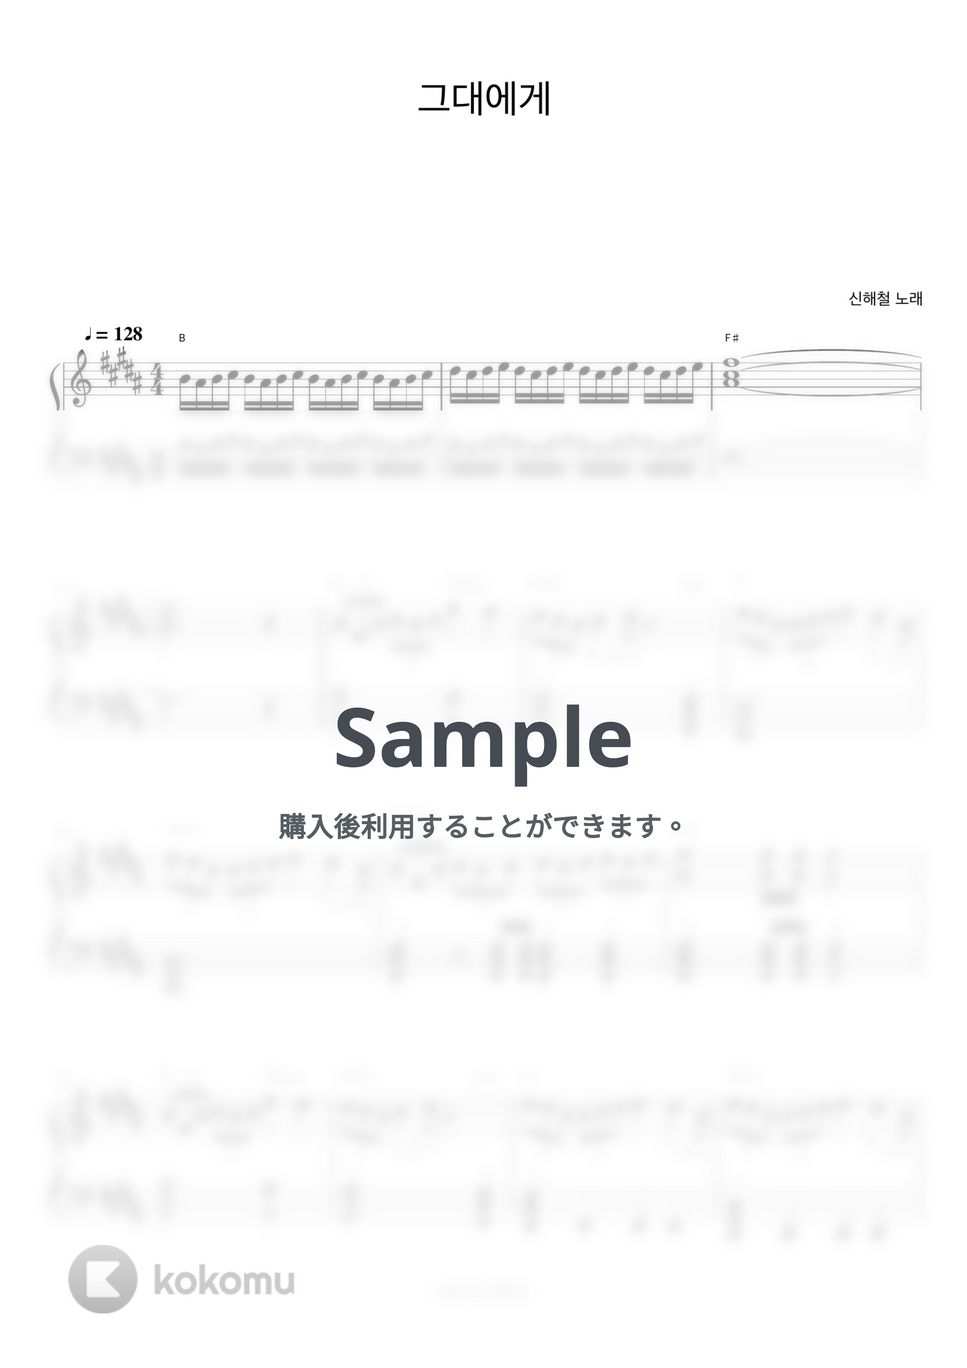 シン・ヘチョル - To You (ピアノ伴奏楽譜) by 피아노정류장